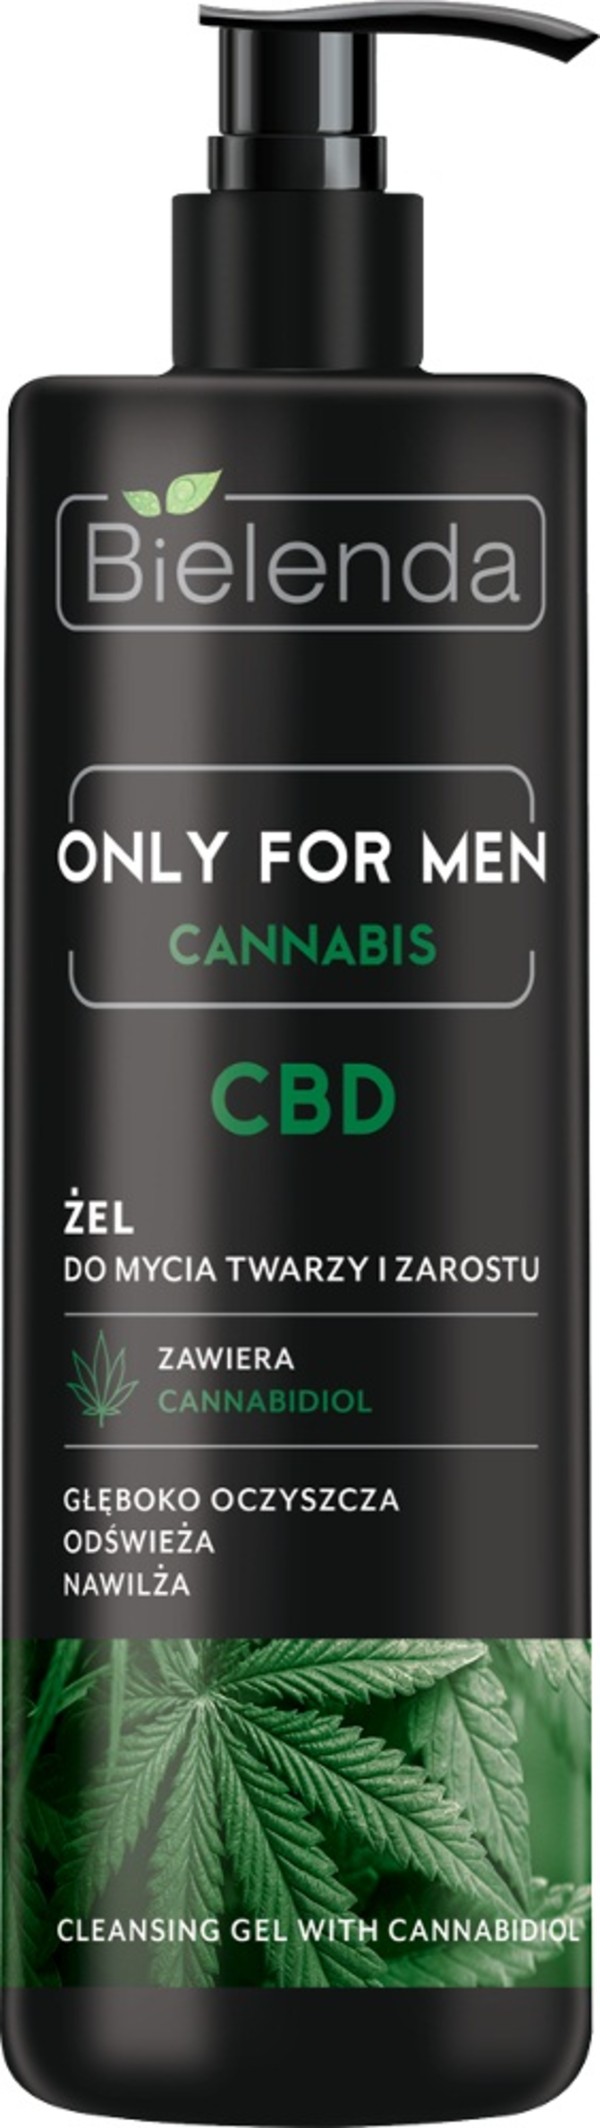 Only for Men Cannabis CBD Żel do mycia twarzy i zarostu